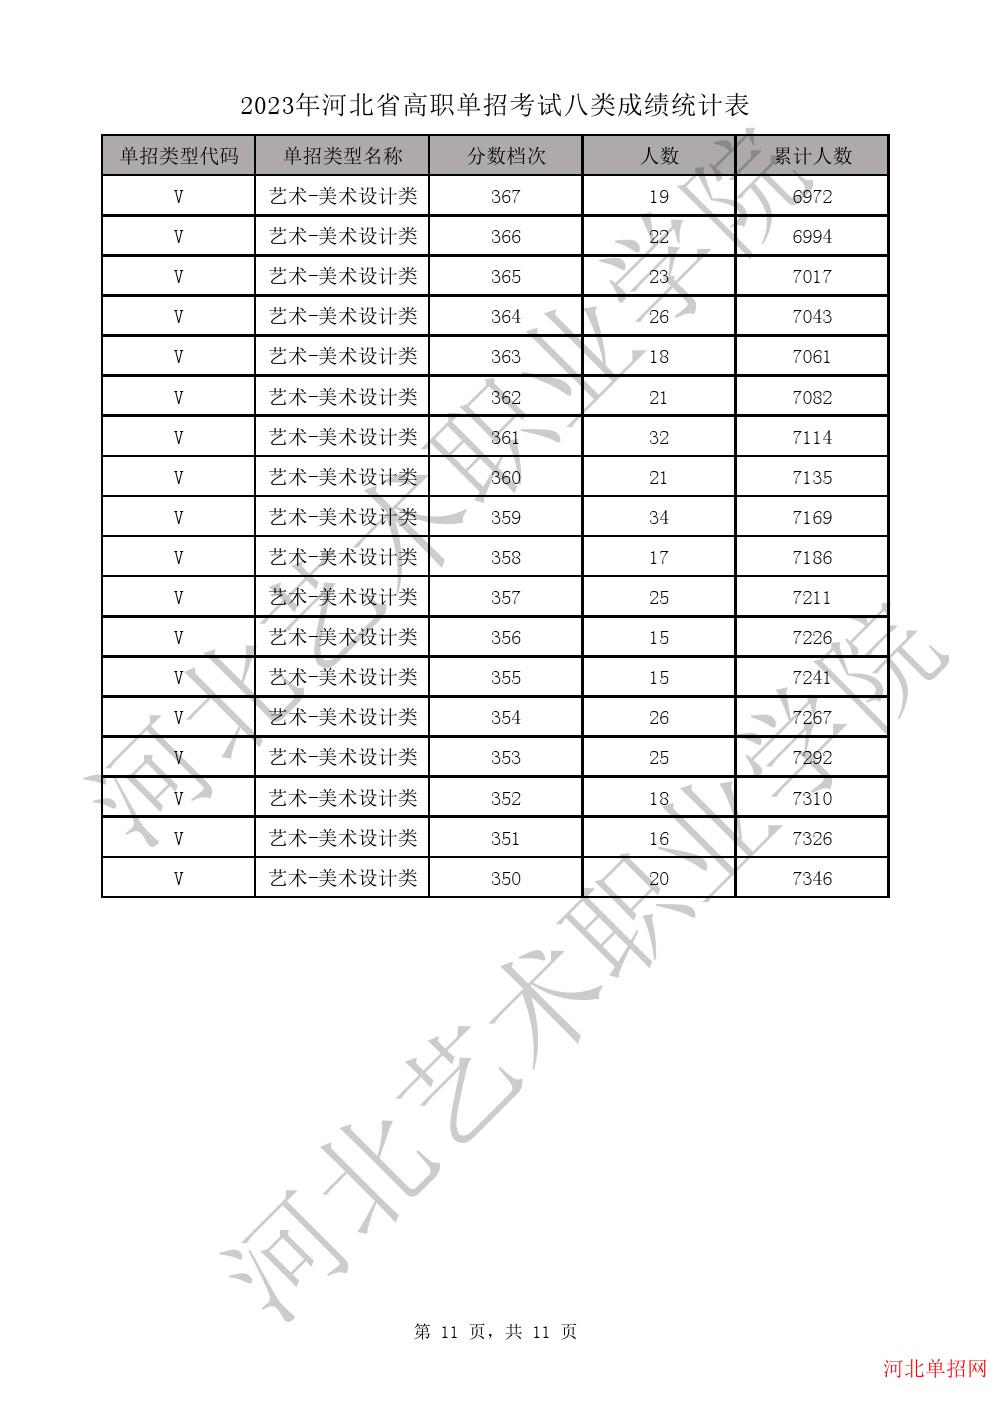 2023年河北省高职单招考试八类成绩统计表-V艺术-美术设计类一分一档表 图11